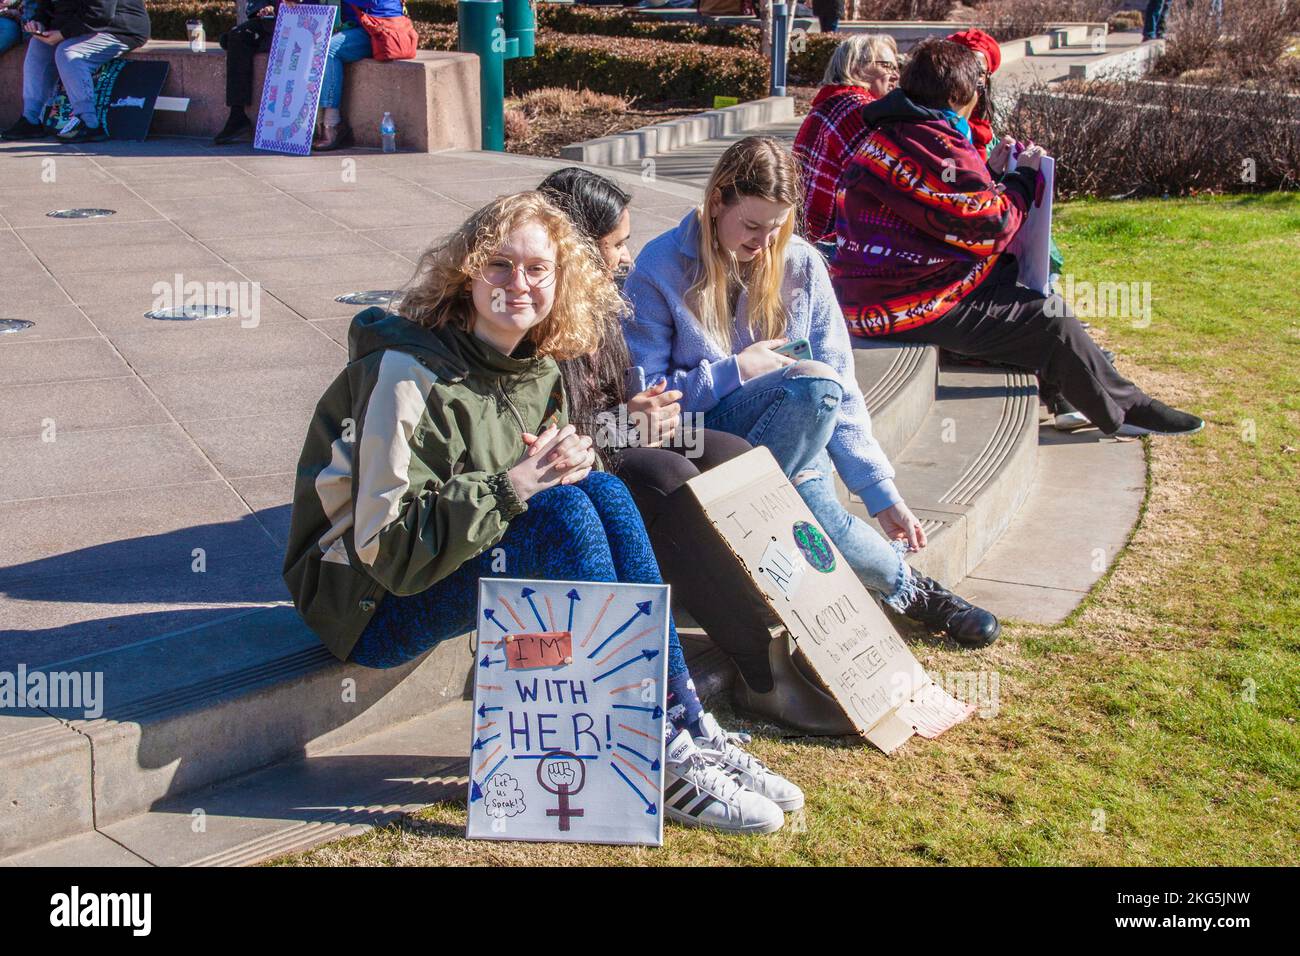 1-18-2020 Tulsa USA Junge Frauen sitzen im frauenmarsch mit Schildern - ein Mädchen lächelt vor der Kamera - Zeichen - Ich bin bei ihr - Lassen Sie uns sprechen Stockfoto